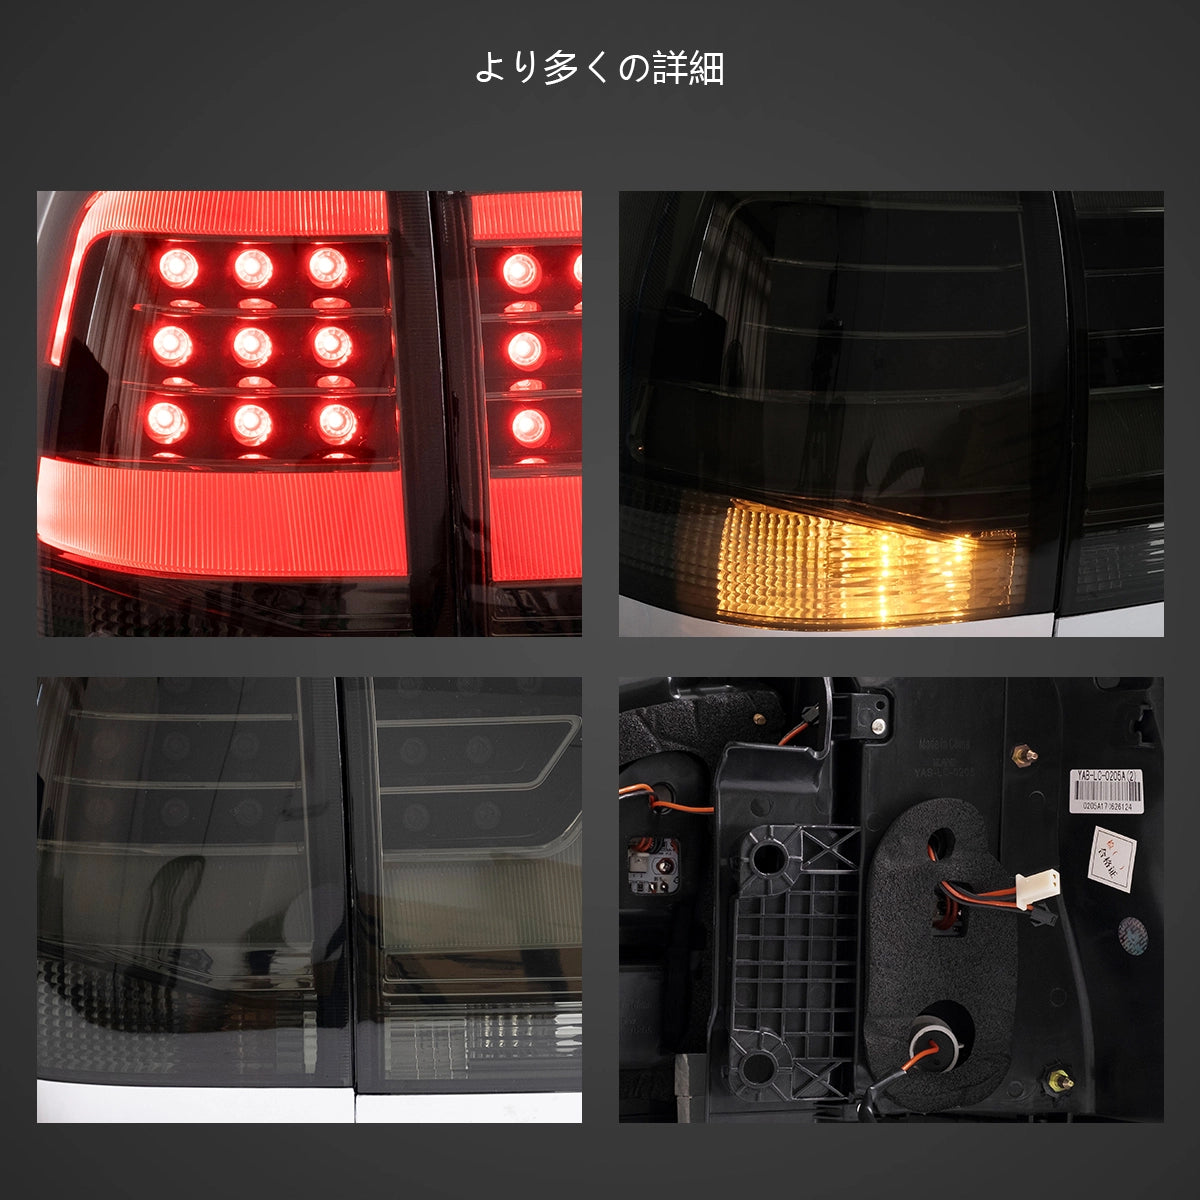 08-11 Toyota Land Cruiser 200 Series Vland LEDテールライト、アンバーウィンカー付き